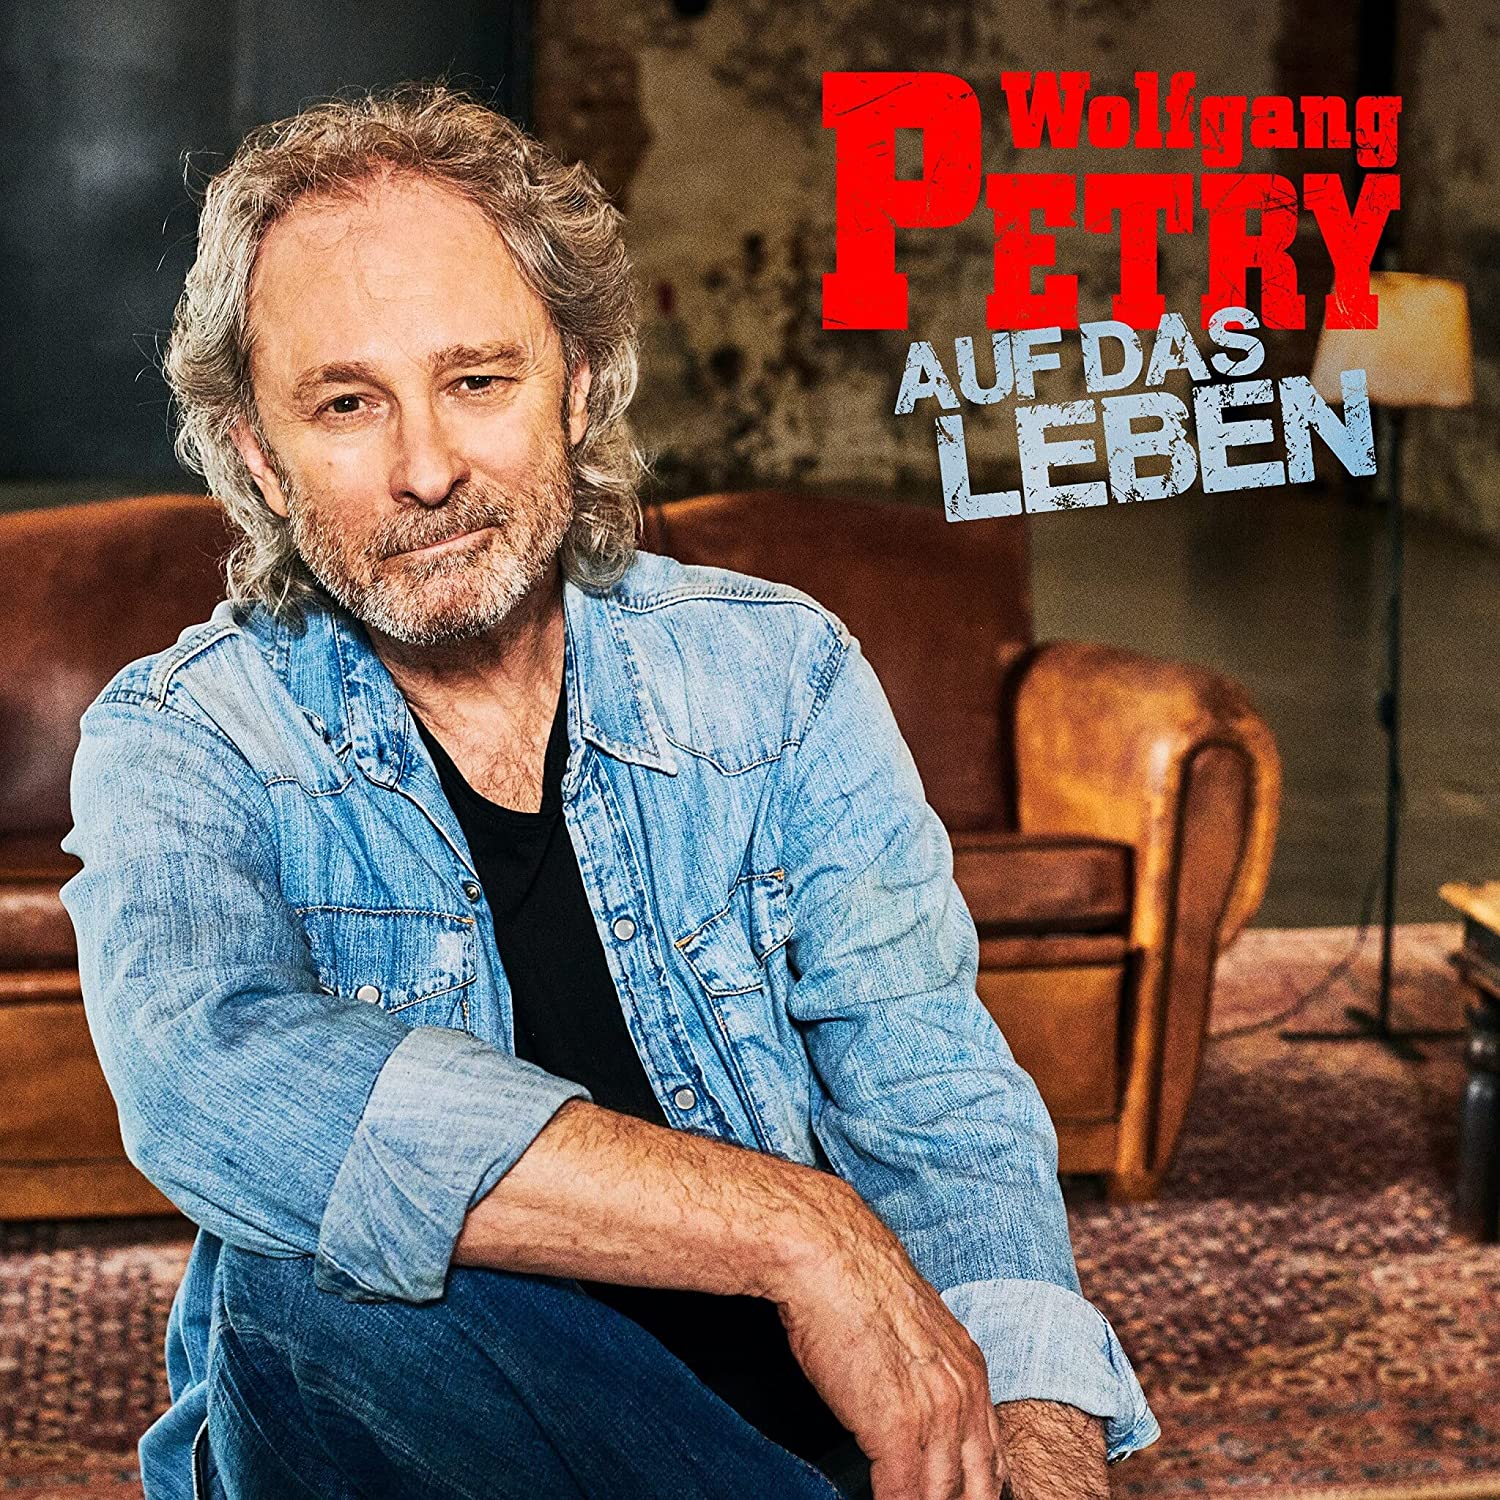 Wolfgang Petry - Auf das Leben (2021)